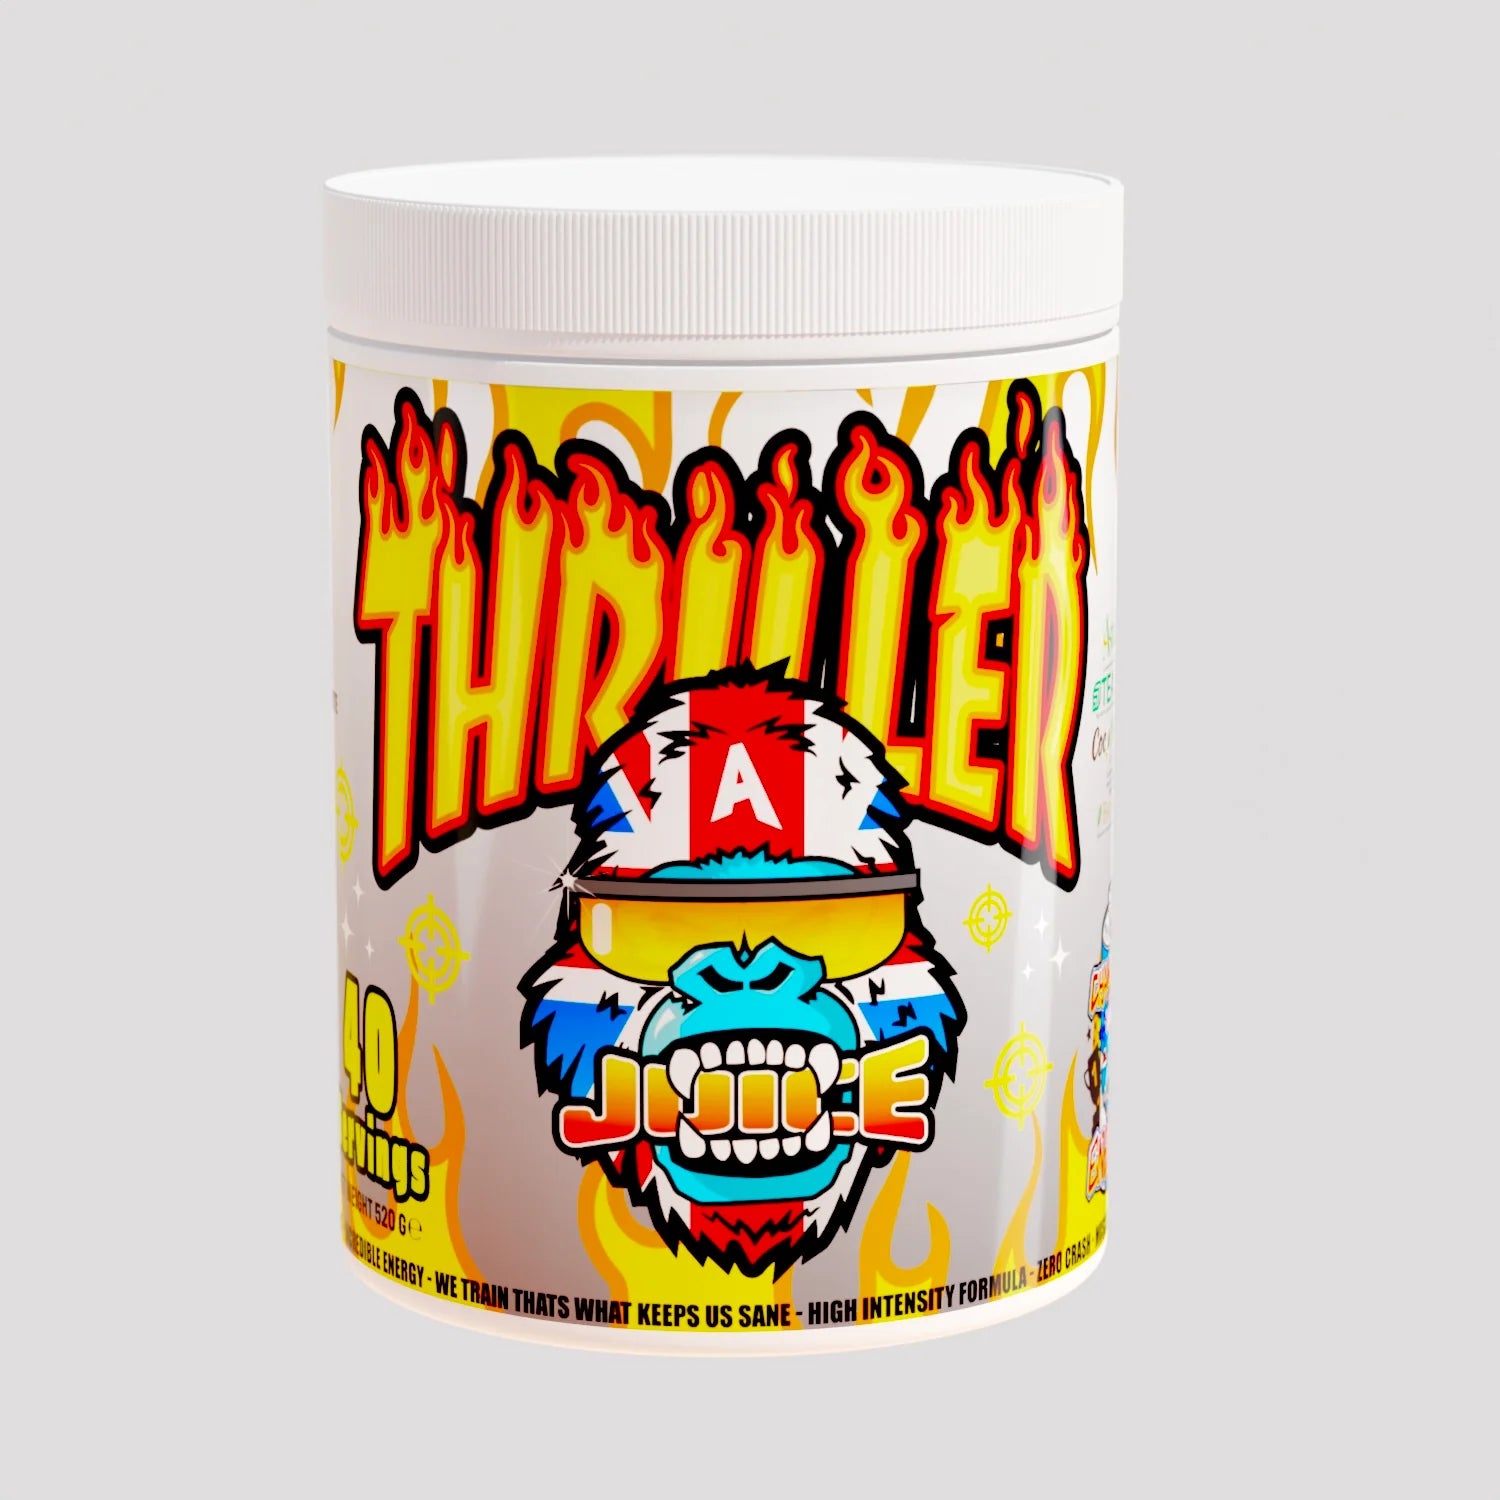 Gorilla Alpha Thriller Juice